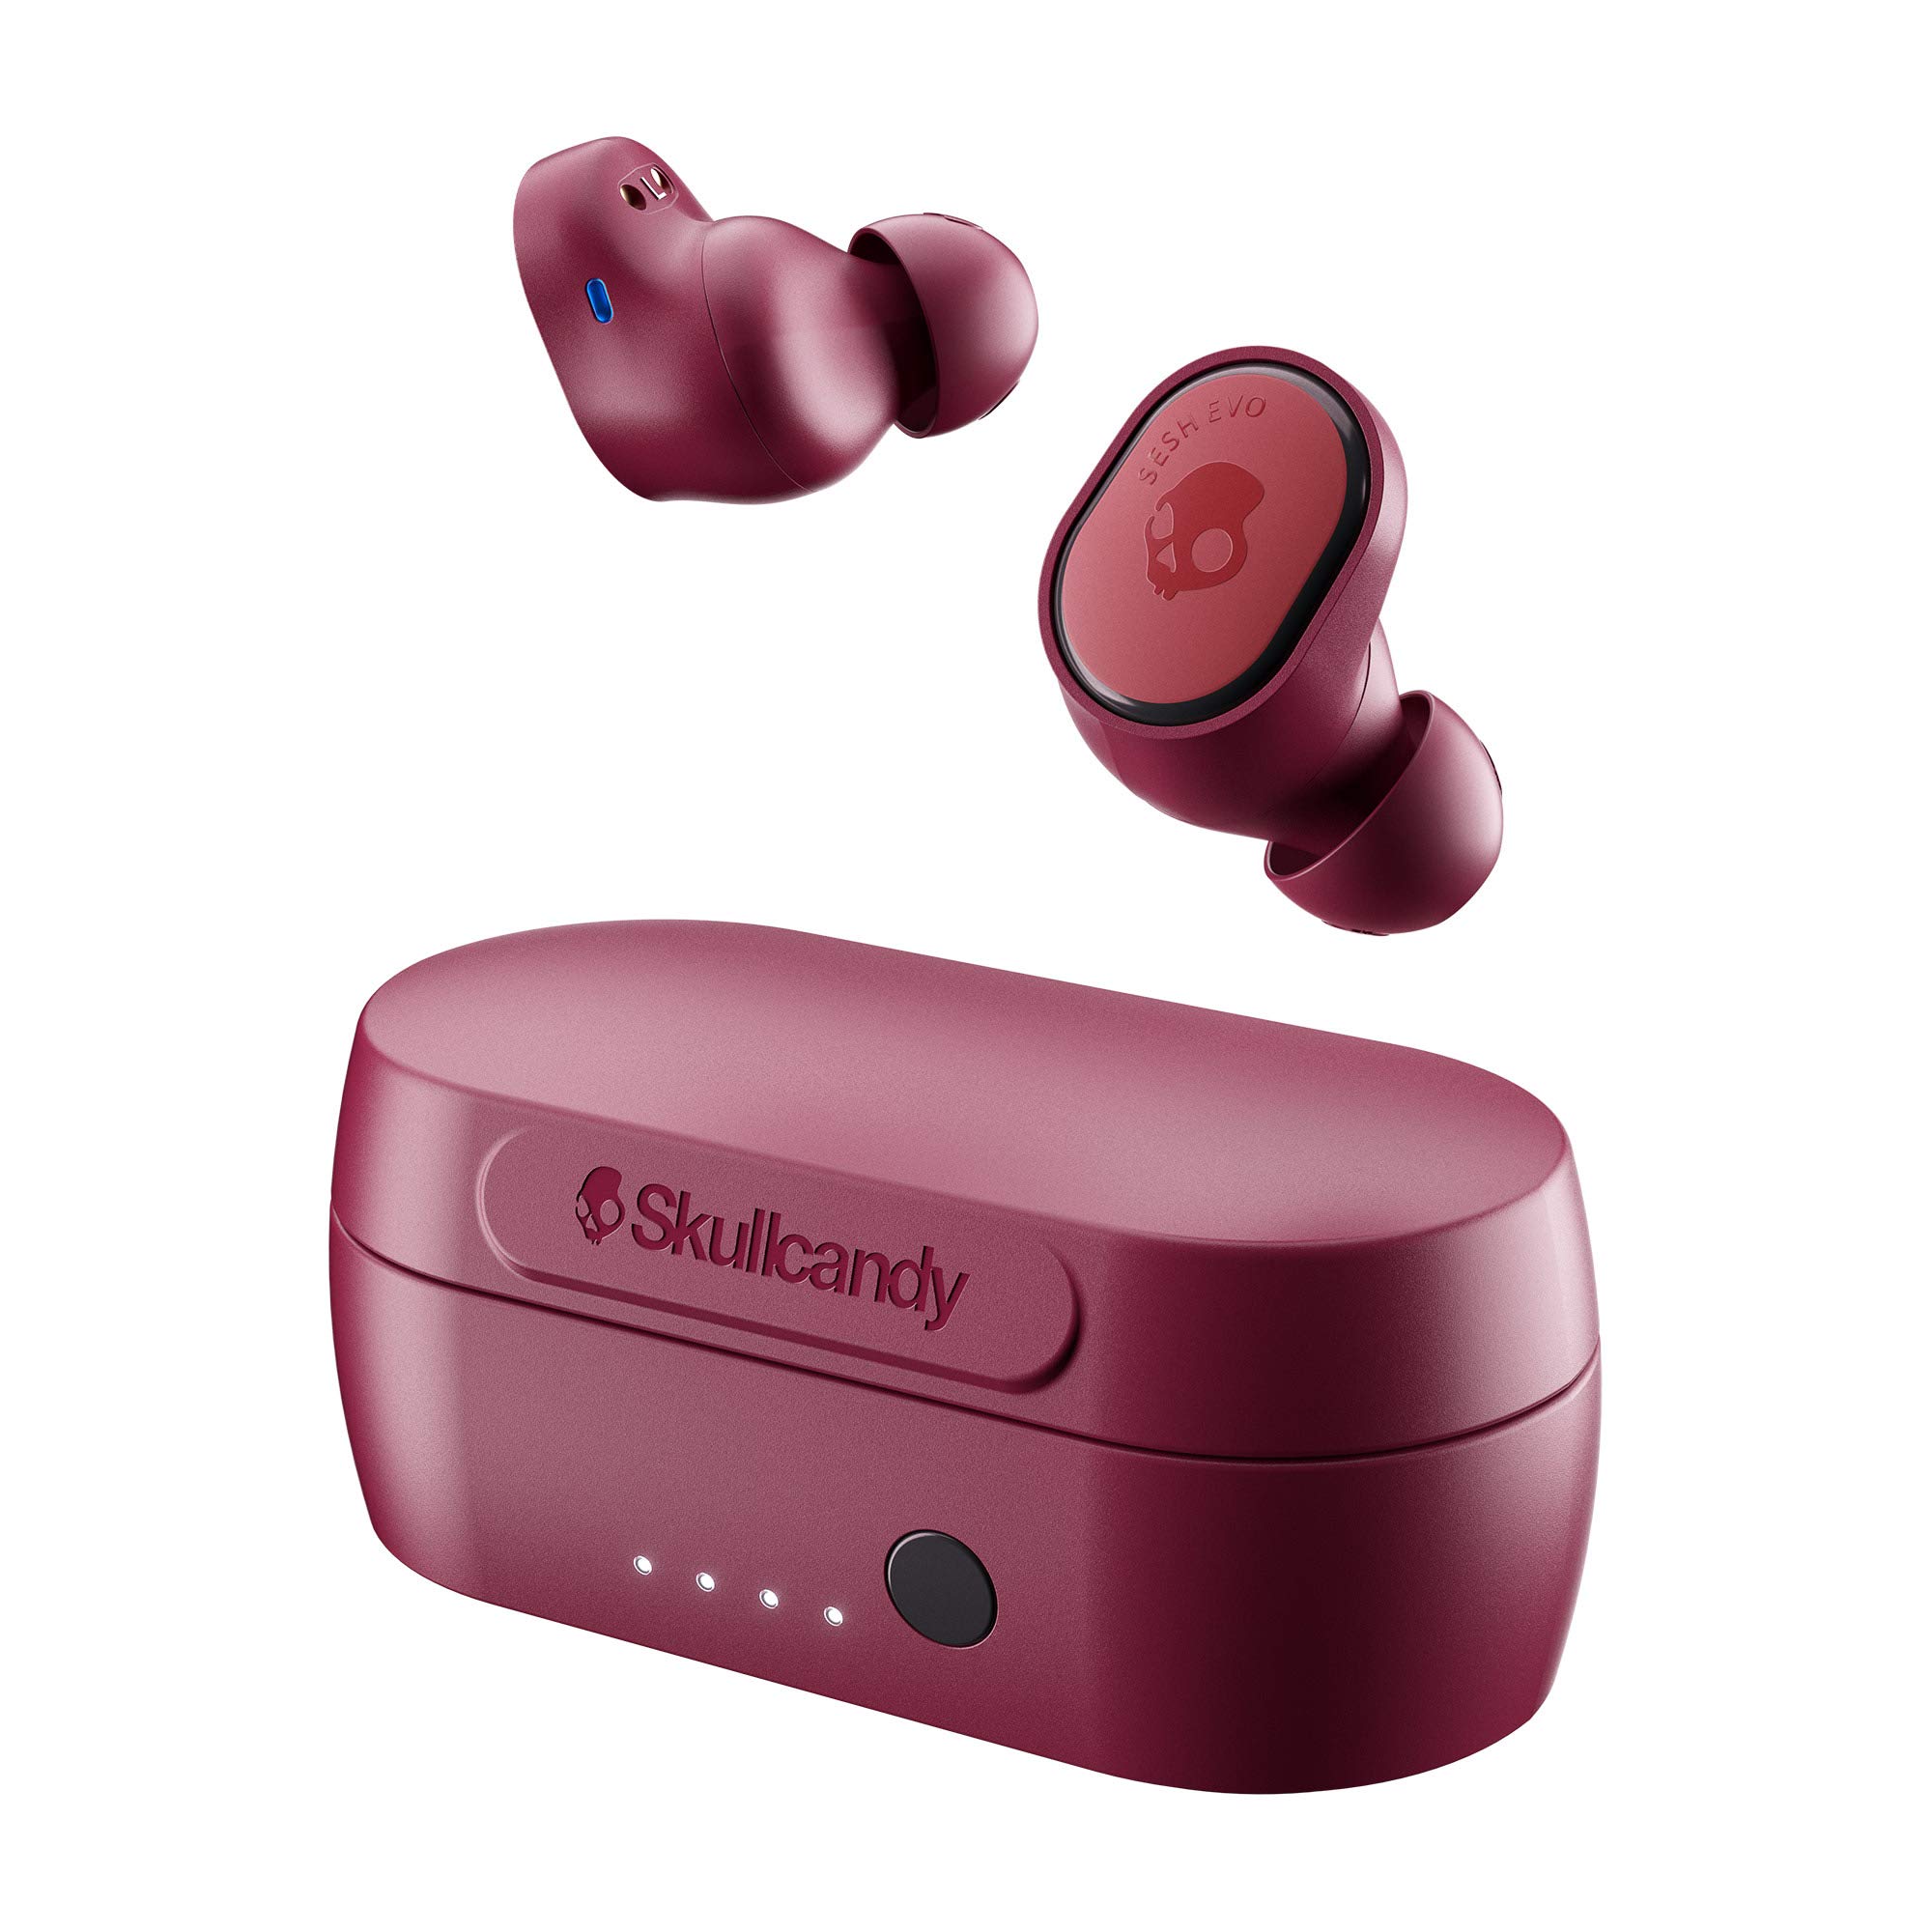  Skullcandy Sesh Evo True Wireless インイヤー Bluetooth イヤホン iPhone および Android と互換性あり / 充電ケースとマイク / ジム、スポーツ、ゲームに最適 IP55...